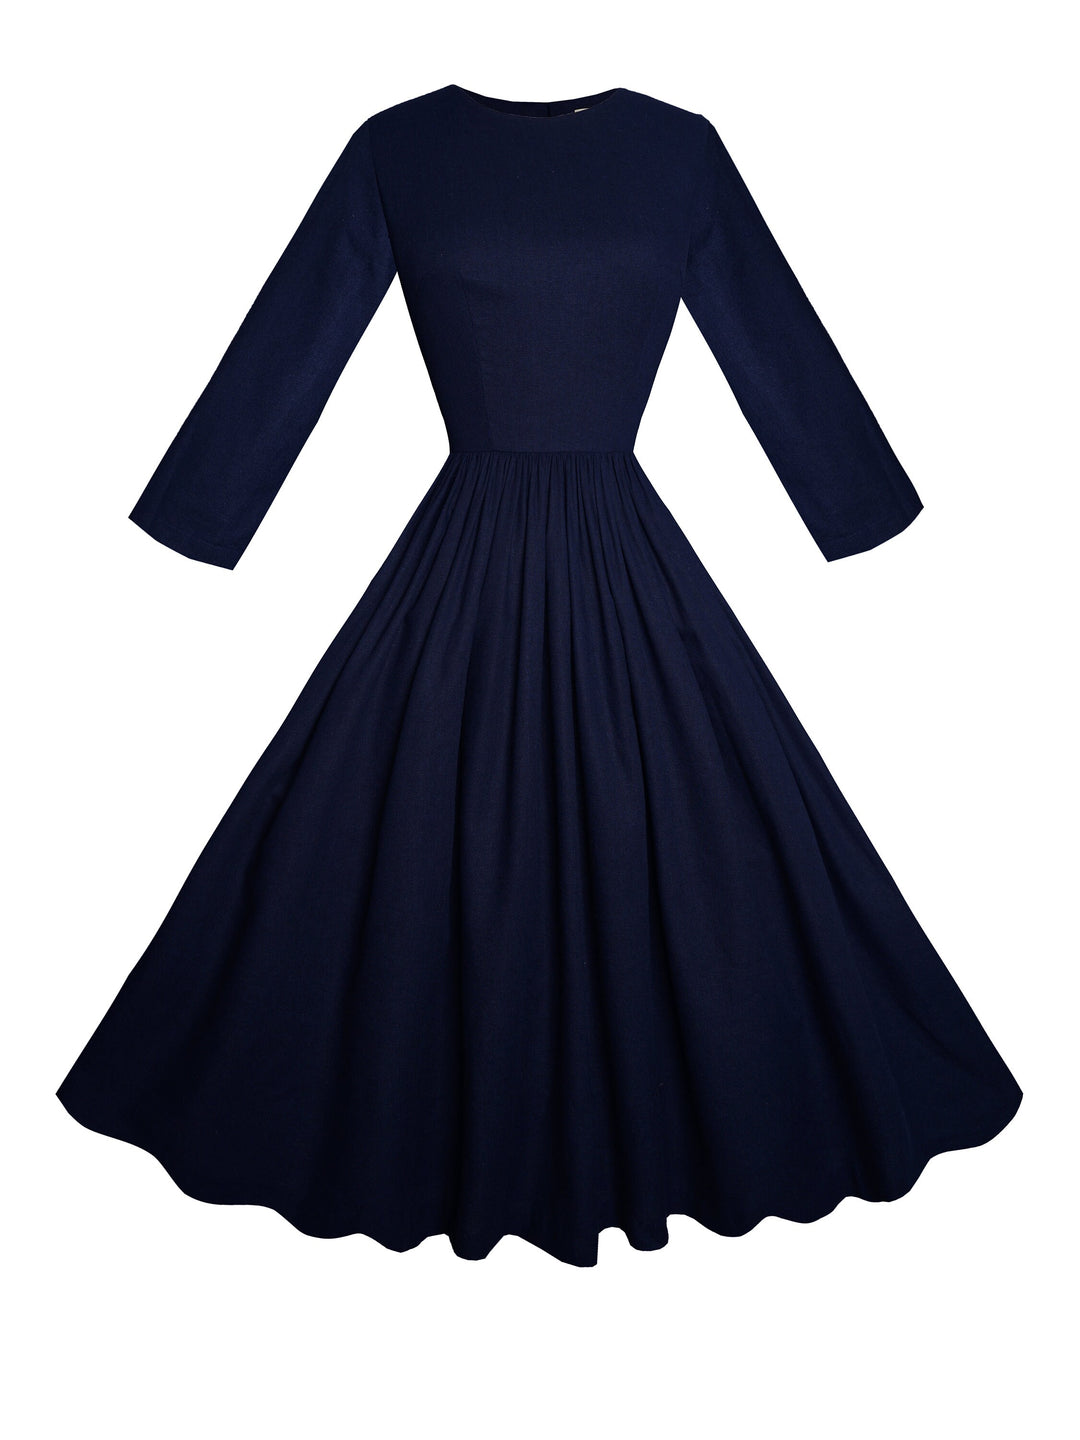 MTO - Marianne Dress in Indigo Blue Linen